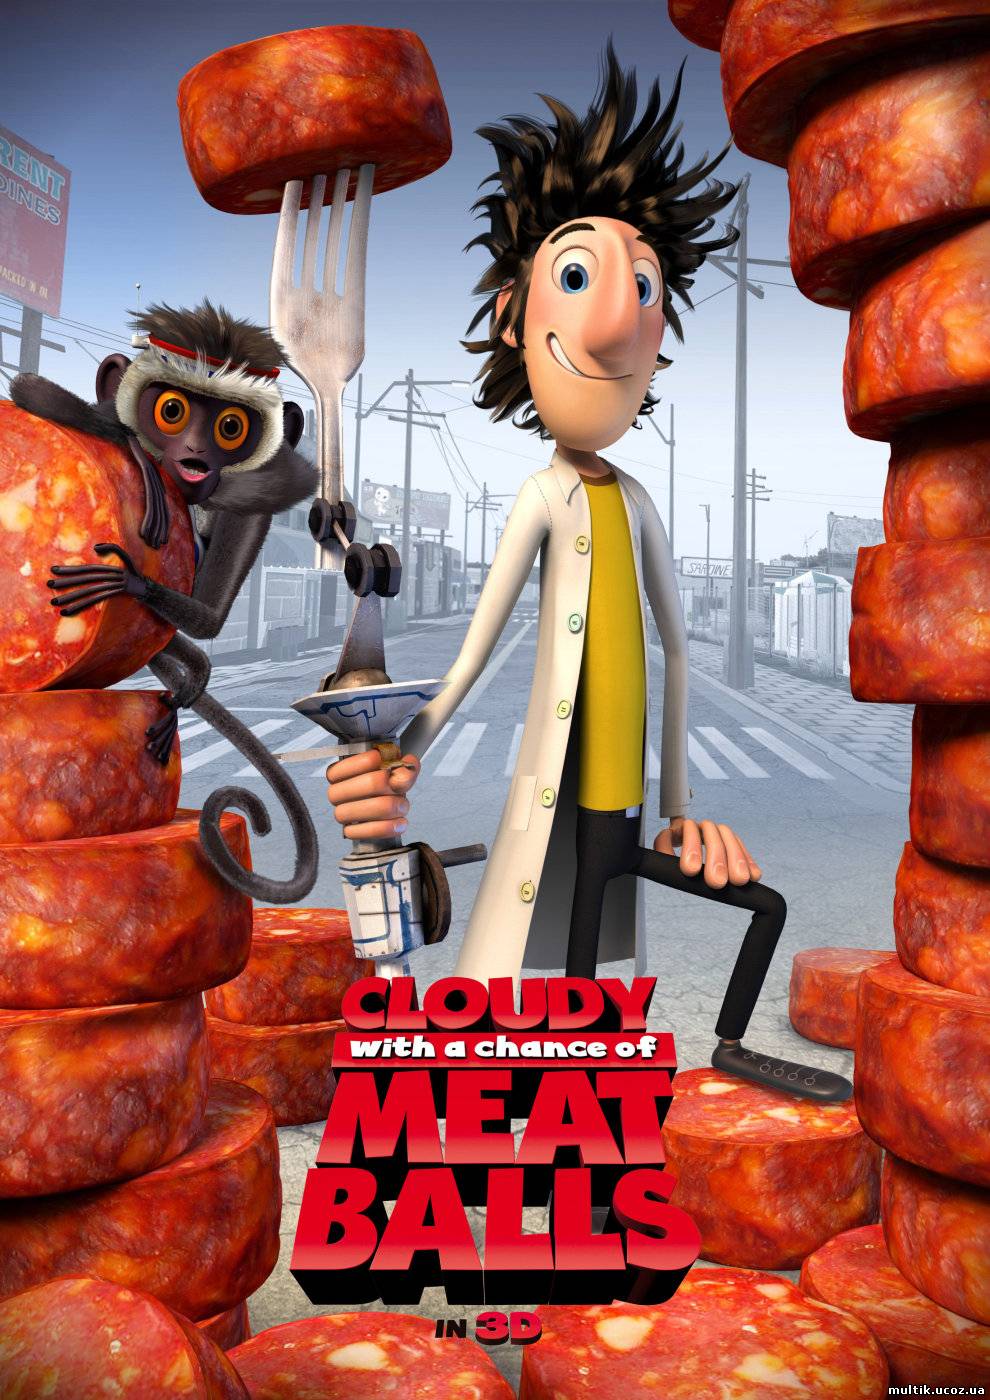 Облачно, возможны осадки в виде фрикаделек / Cloudy with a Chance of Meatballs (2009) смотреть онлайн